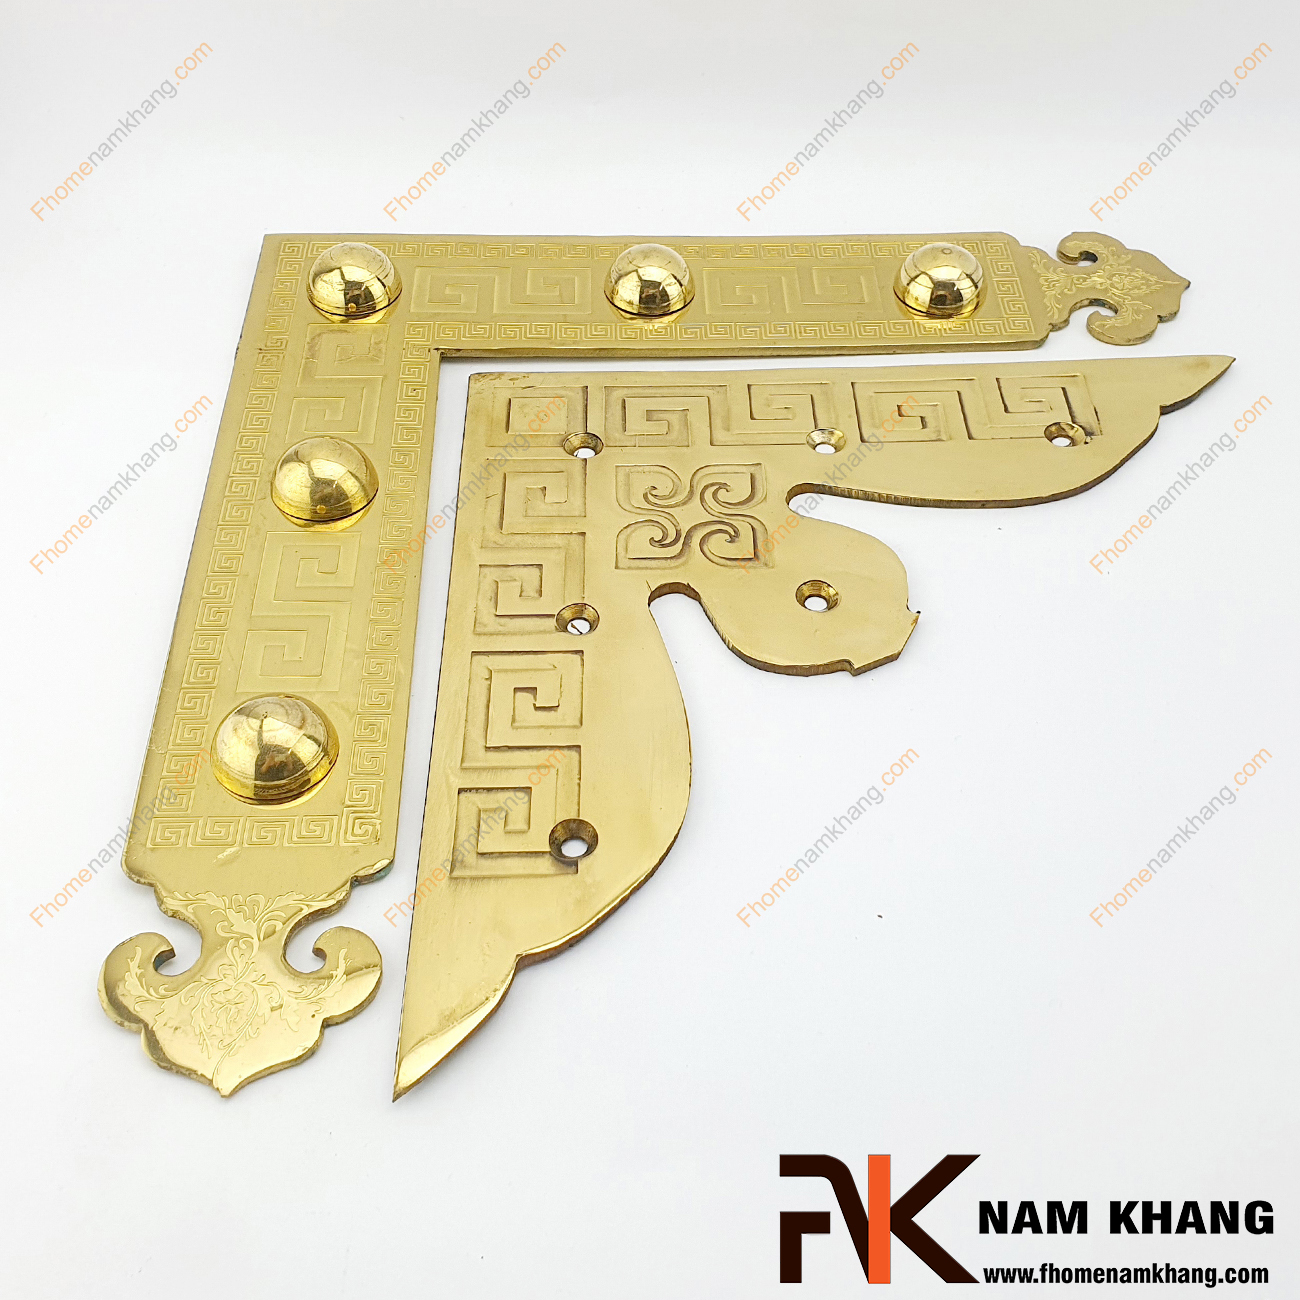 Ke góc cửa gỗ bằng đồng cao cấp NK188-25KVHV là sản phẩm chuyên sử dụng trên các cánh cửa lớn, cả dạng cửa 2 cánh và 4 cánh.